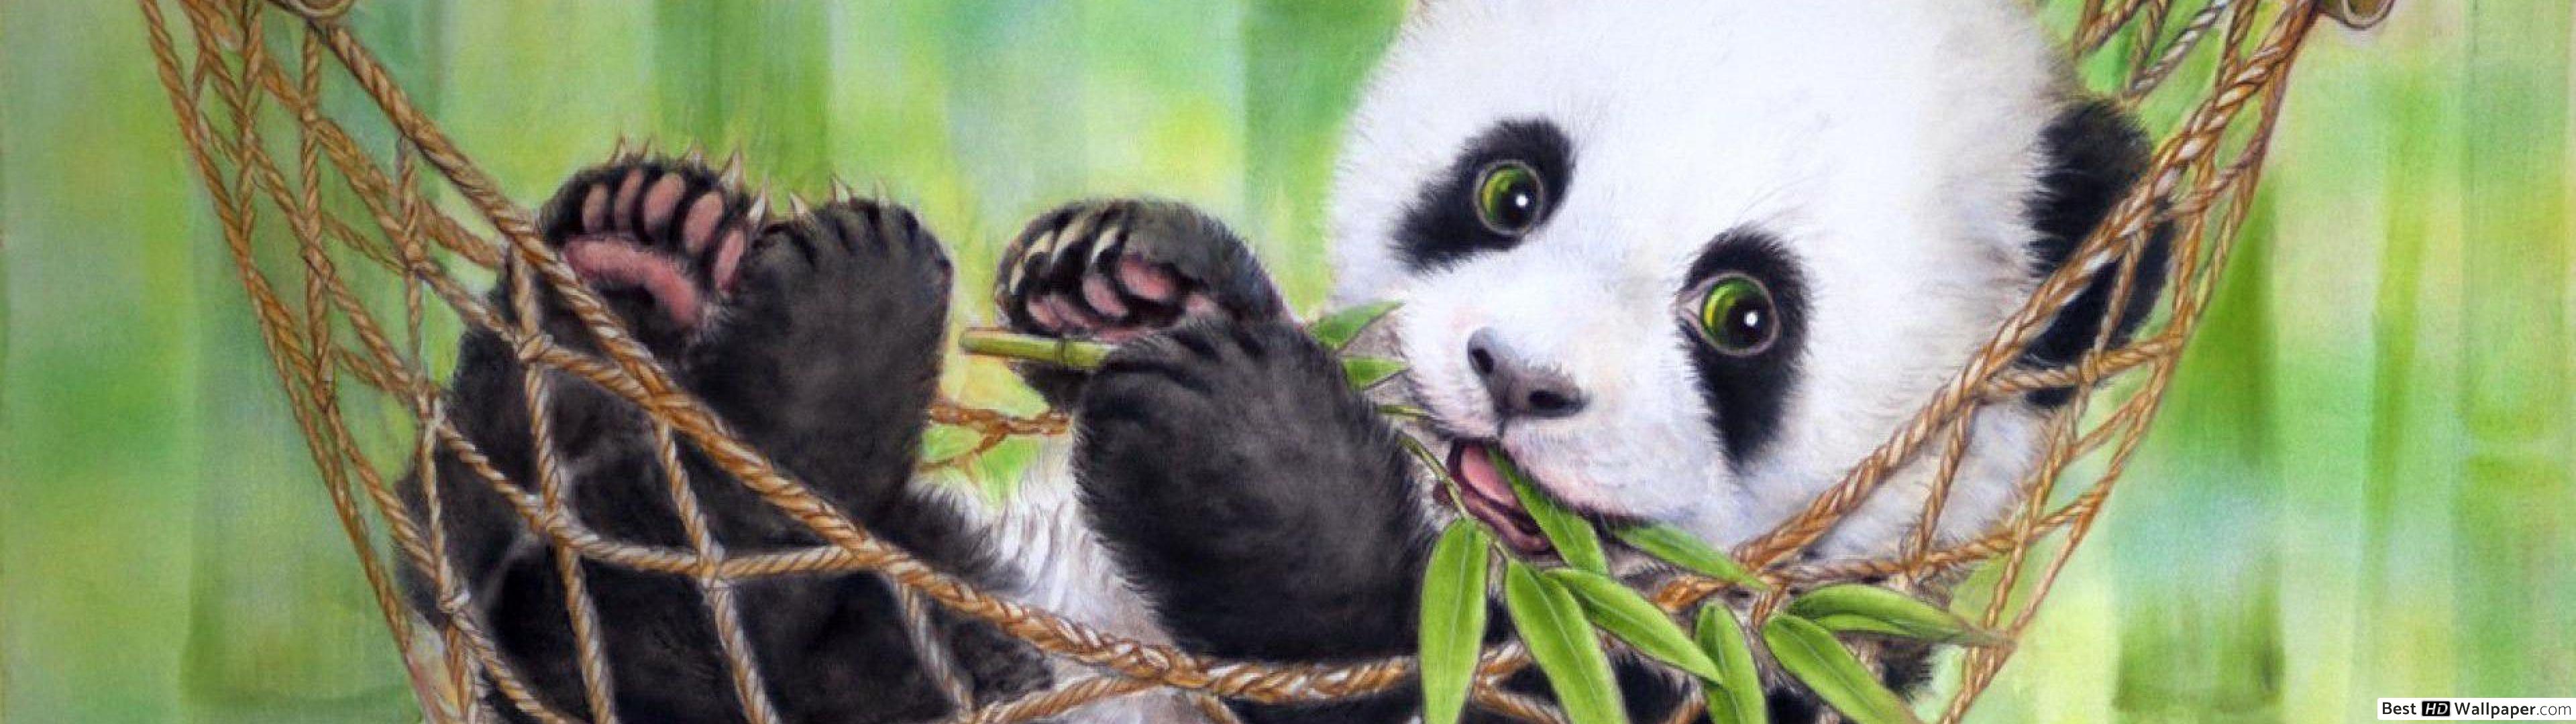 Cute Panda Bear - HD Wallpaper 